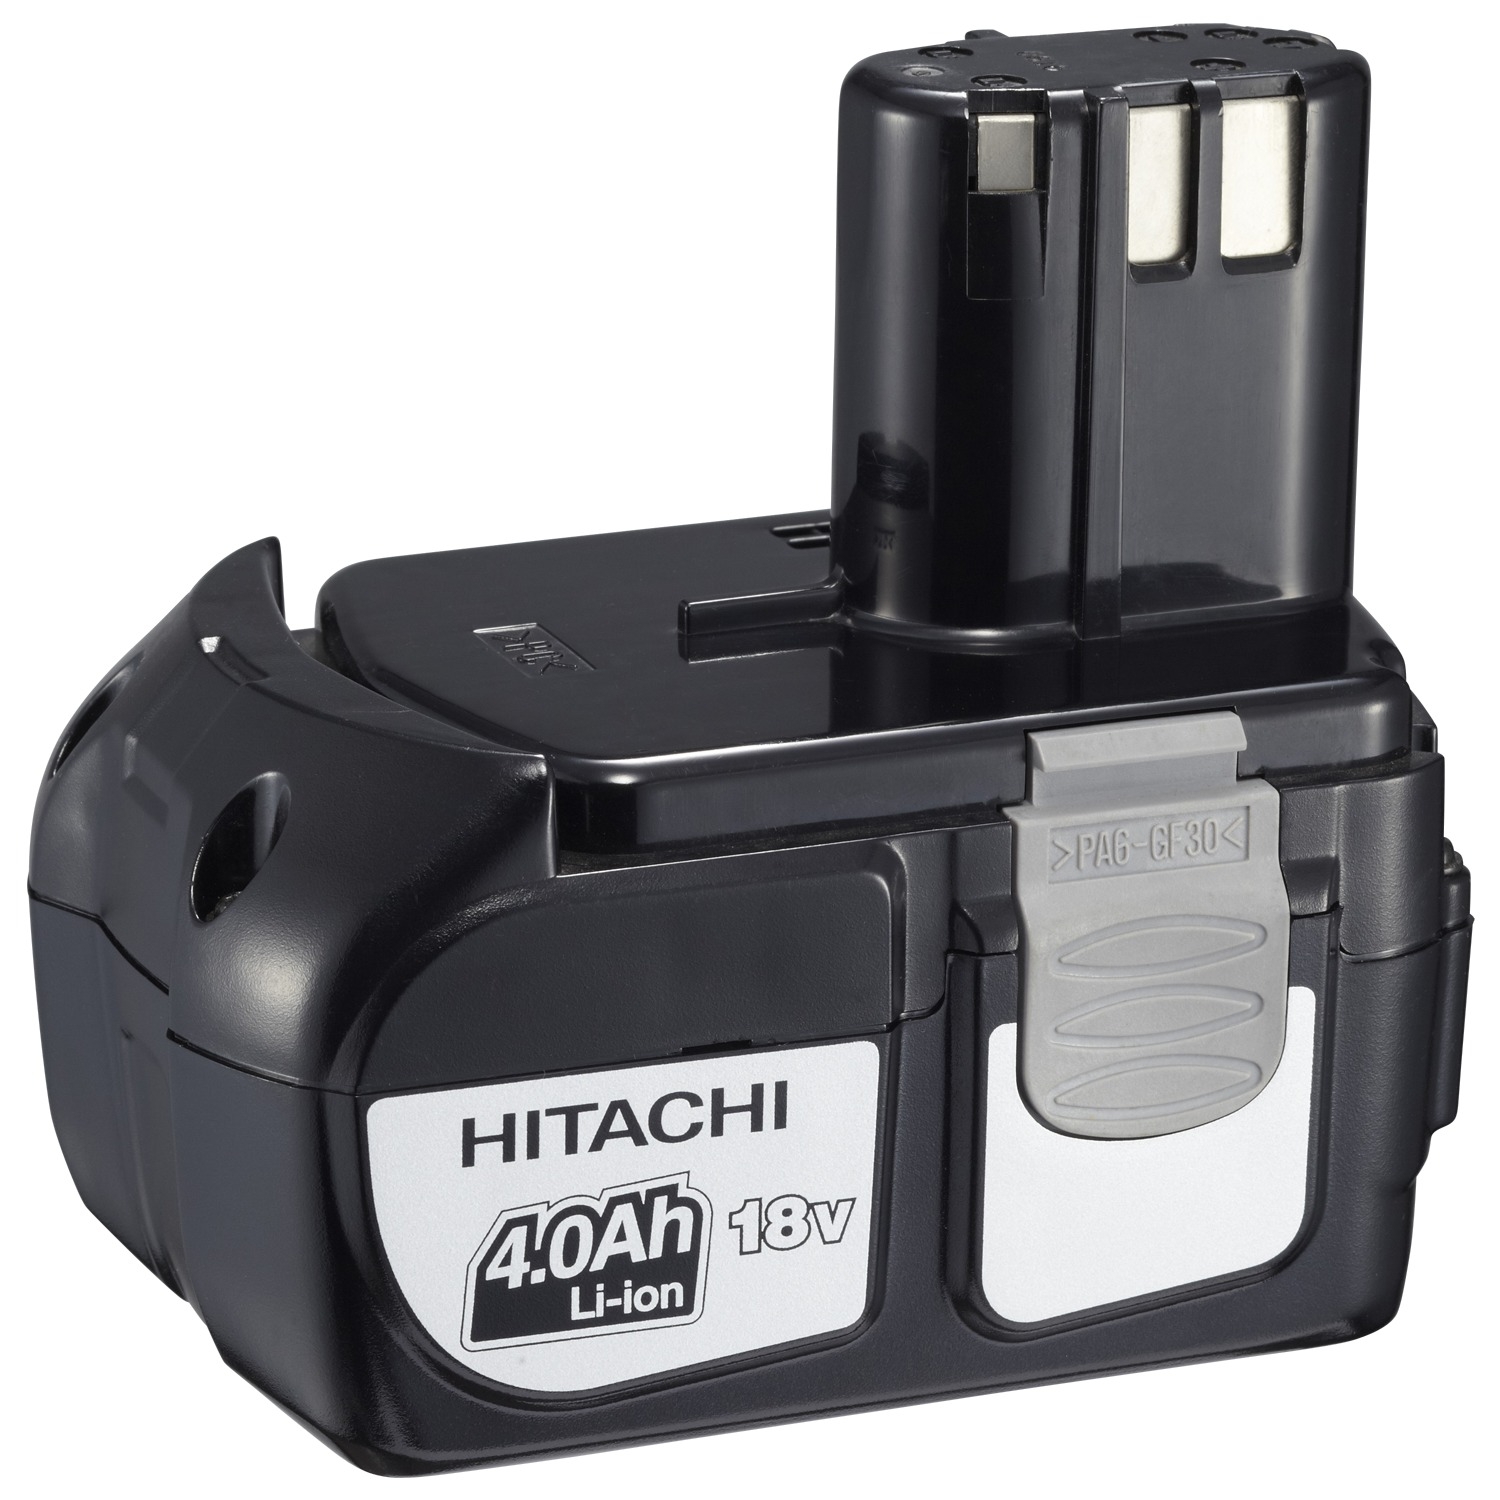 18v battery. Hitachi 18v li-ion Battery. Аккумулятор Hitachi 14.4v li-ion. Аккумулятор для шуруповерта Хитачи 18в. Аккумулятор для шуруповерта Hikoki 18 v.